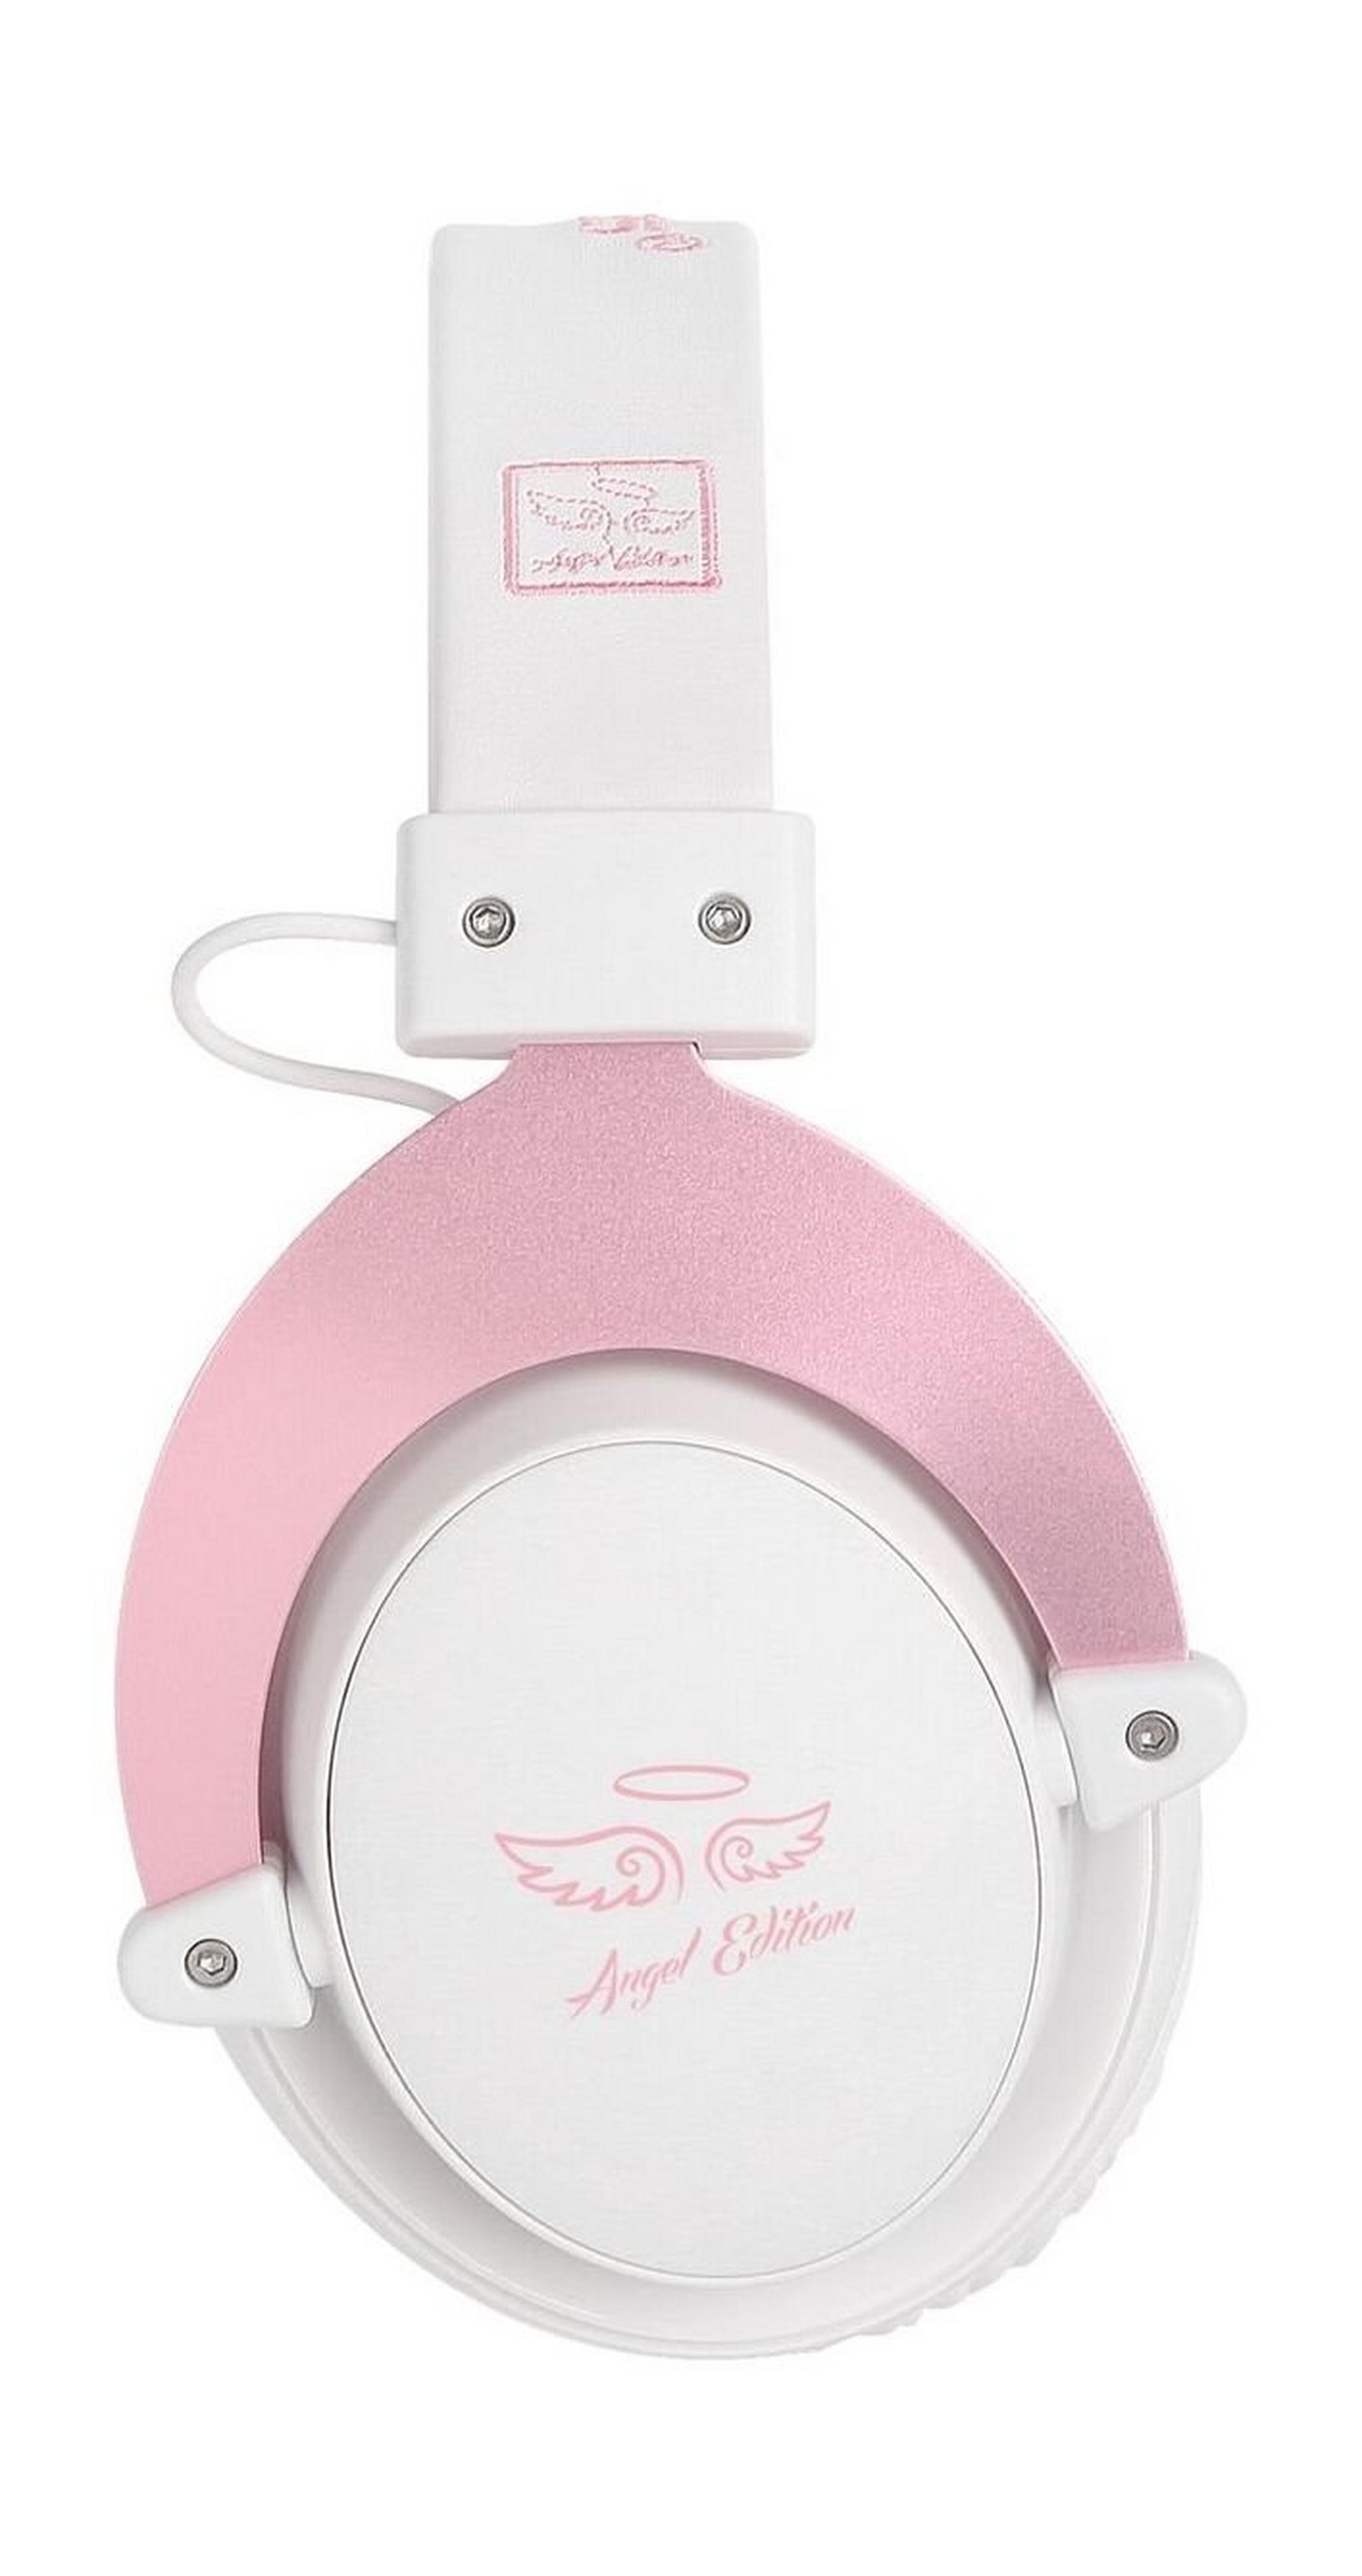 Sades Mpower Gaming Headset - Pink